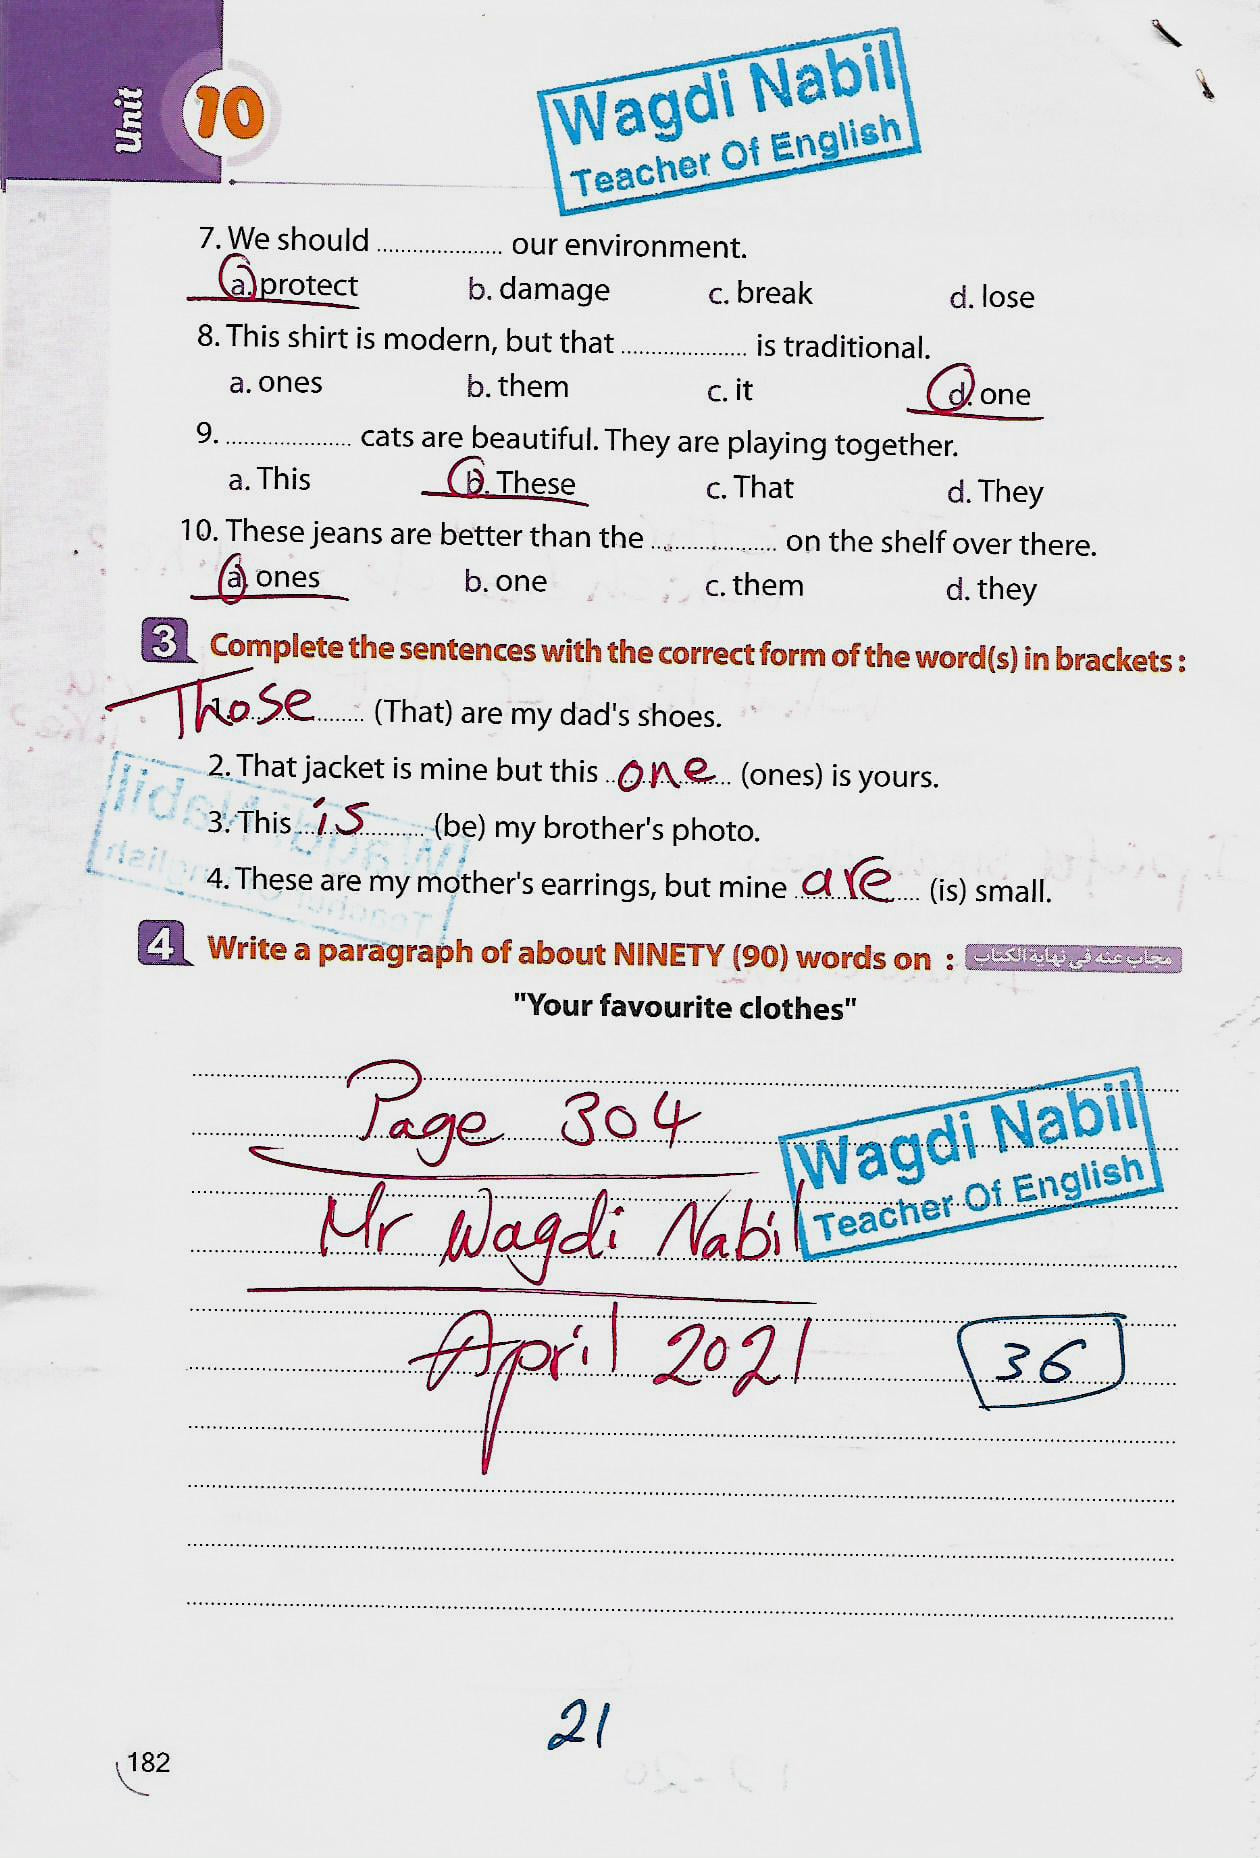 مراجعة اللغة الانجليزية للصف الثاني الاعدادي الترم الثاني mr _ Wagdi Nabil 8